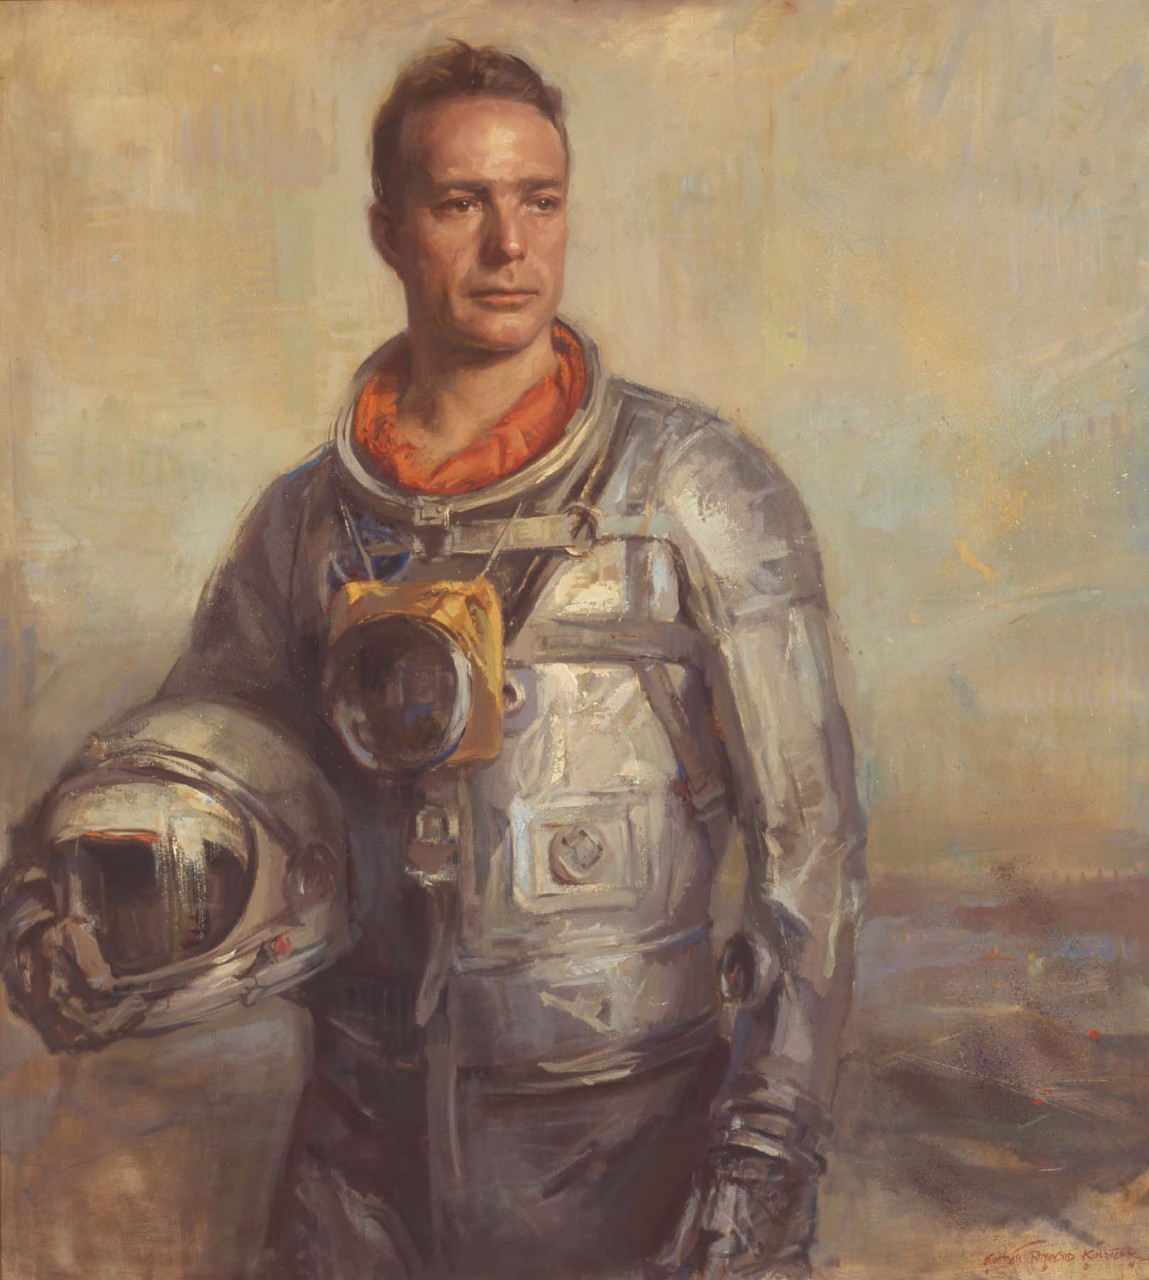 Portrait of astronaut Scott Carpenter in his space suite